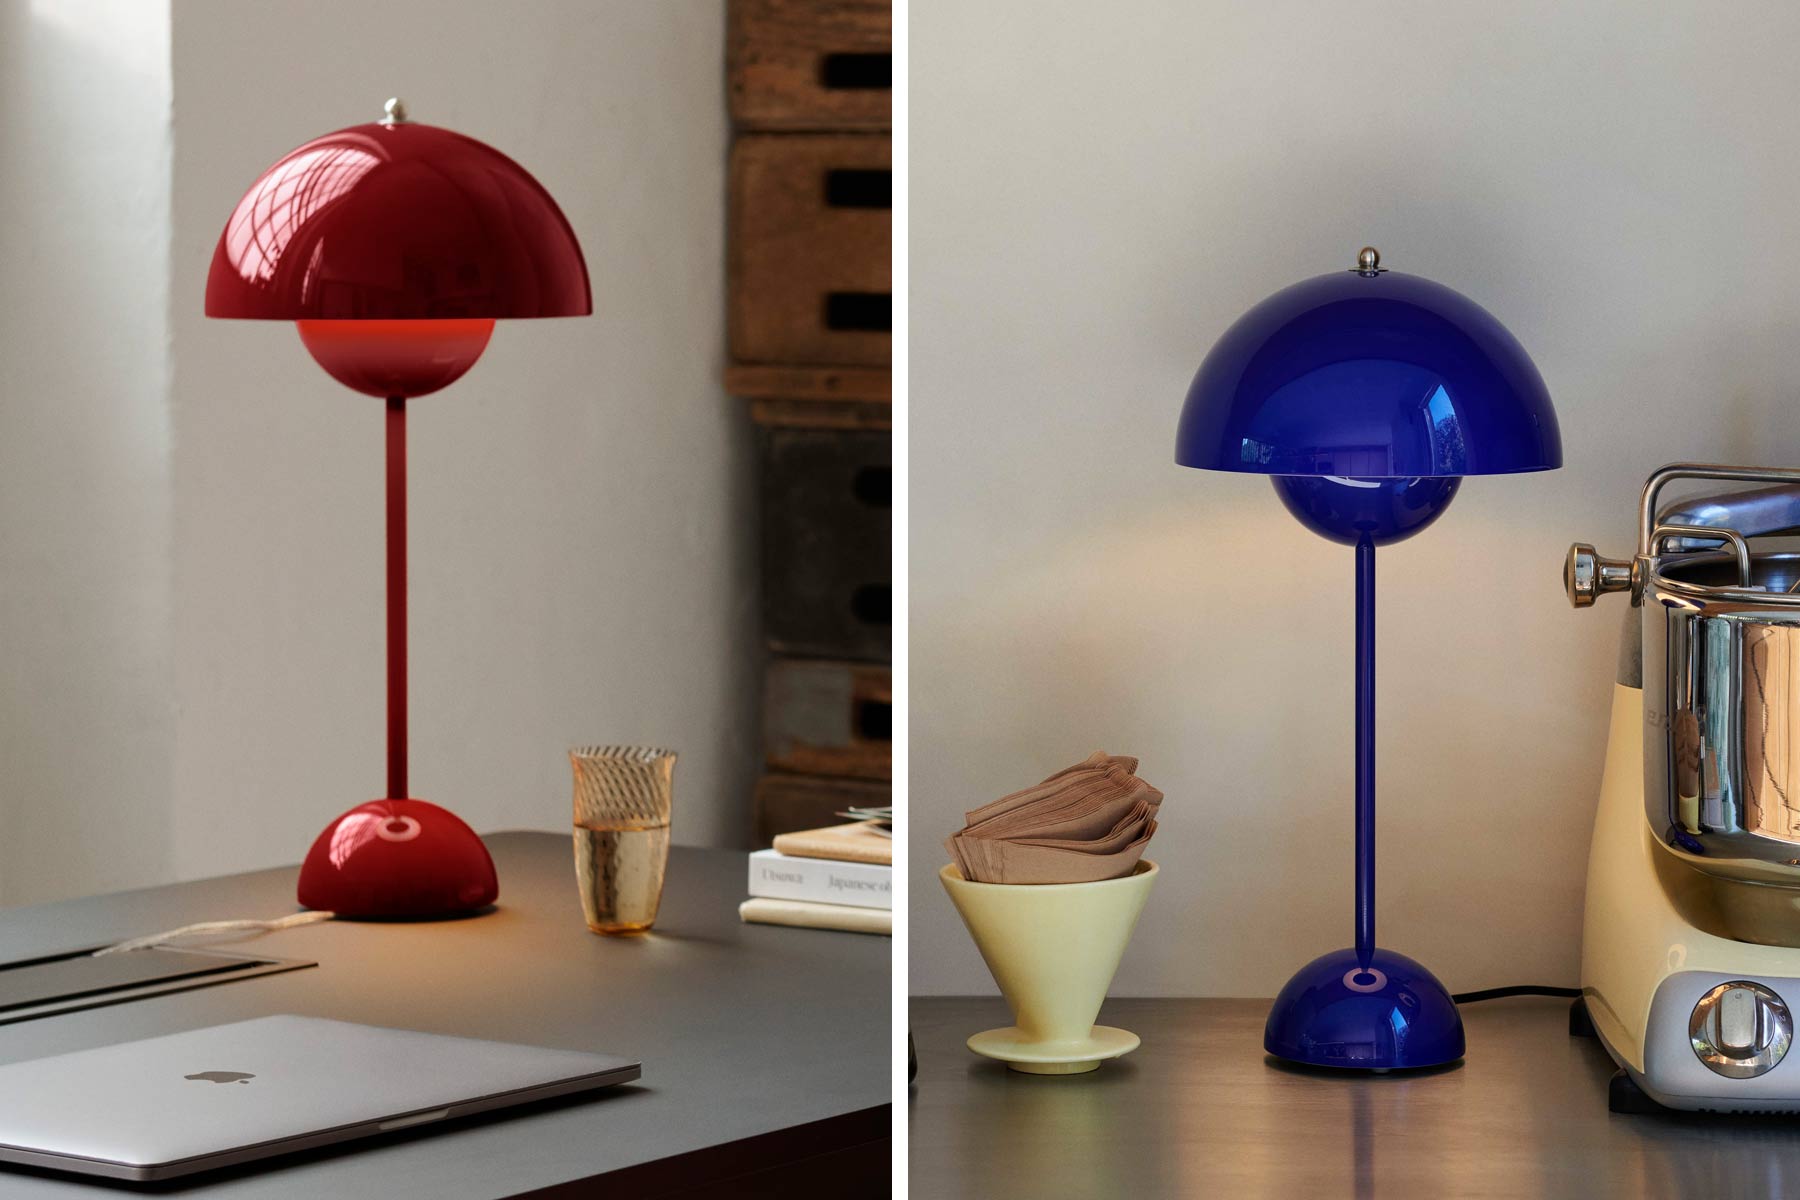 Lampe de table Flowerpot VP3 &tradition - rouge